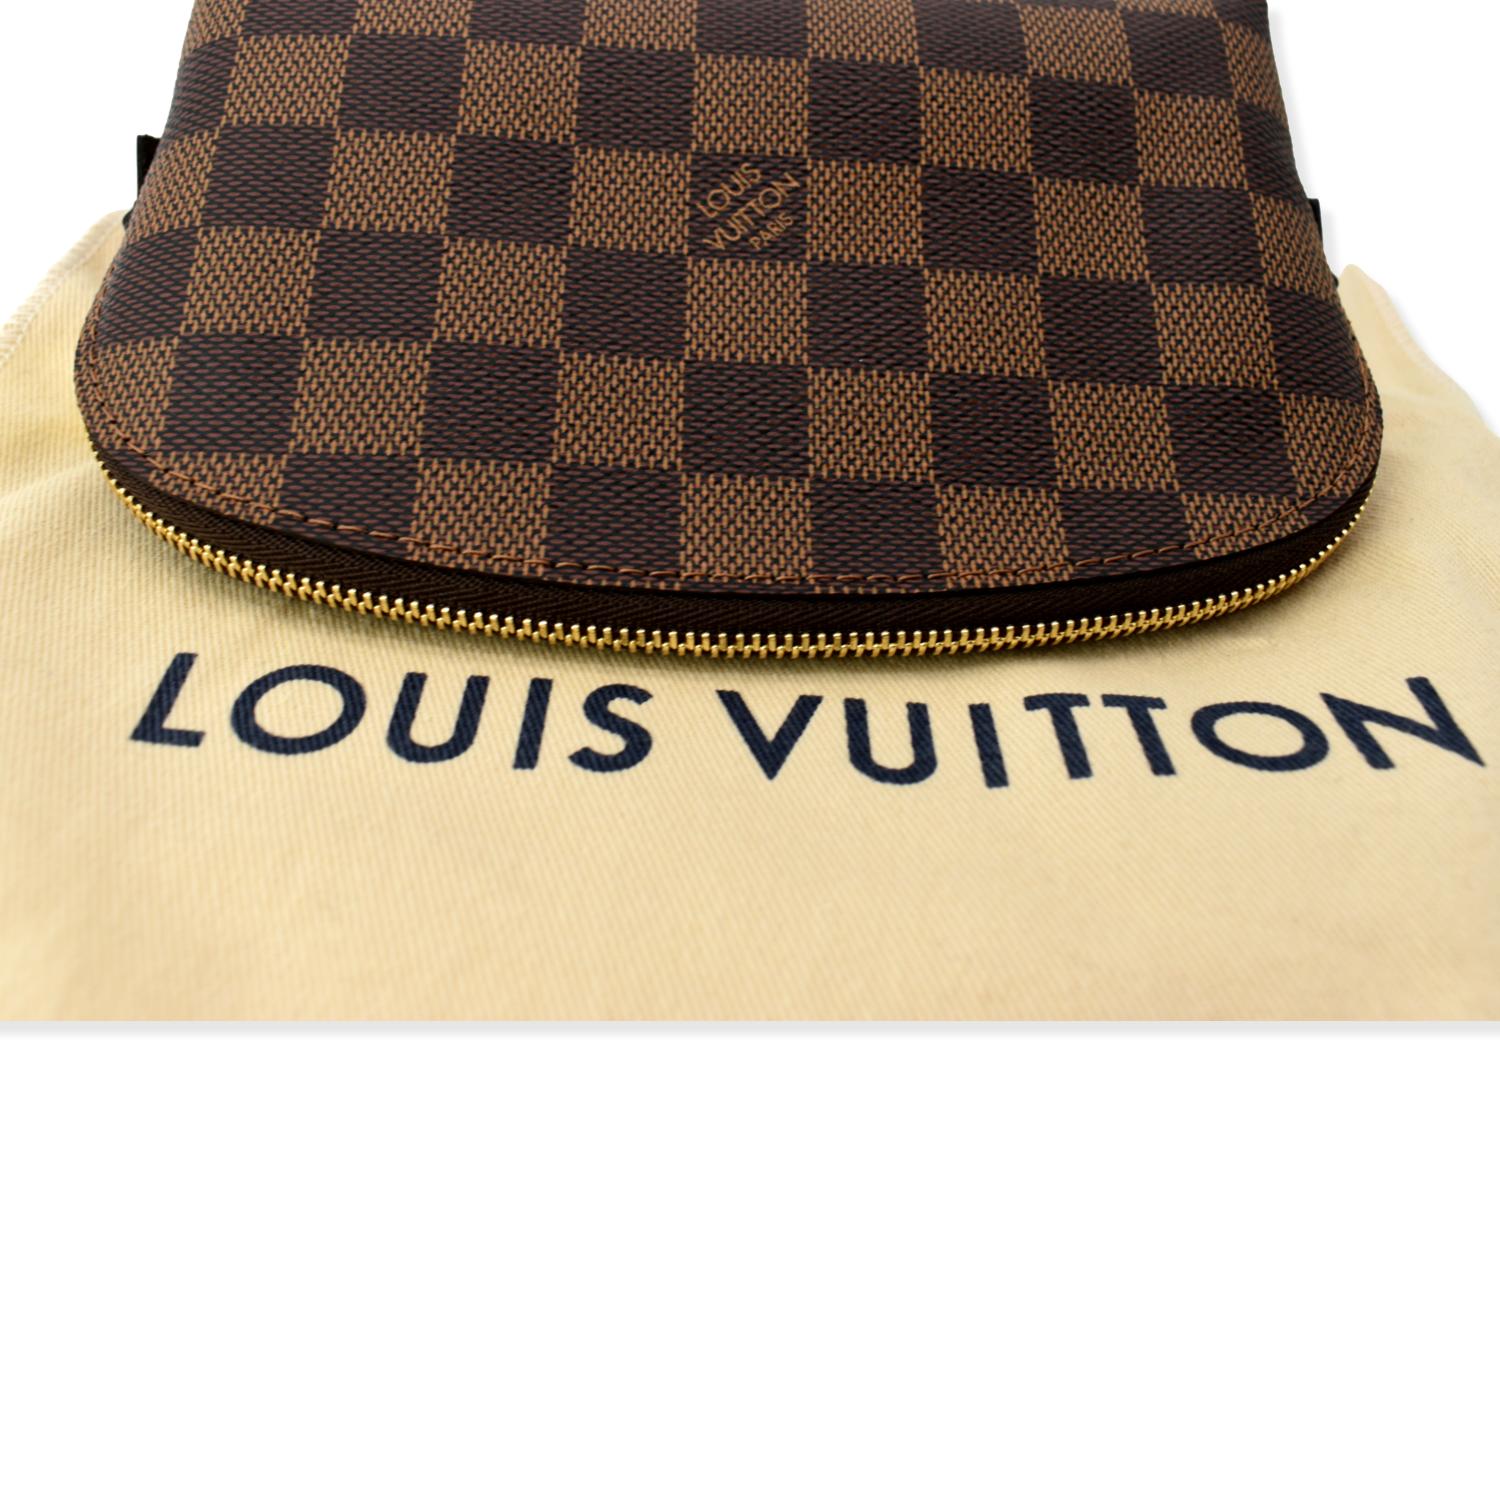 Authentic Louis Vuitton Damier Ebene Cosmetic Pouch – Paris